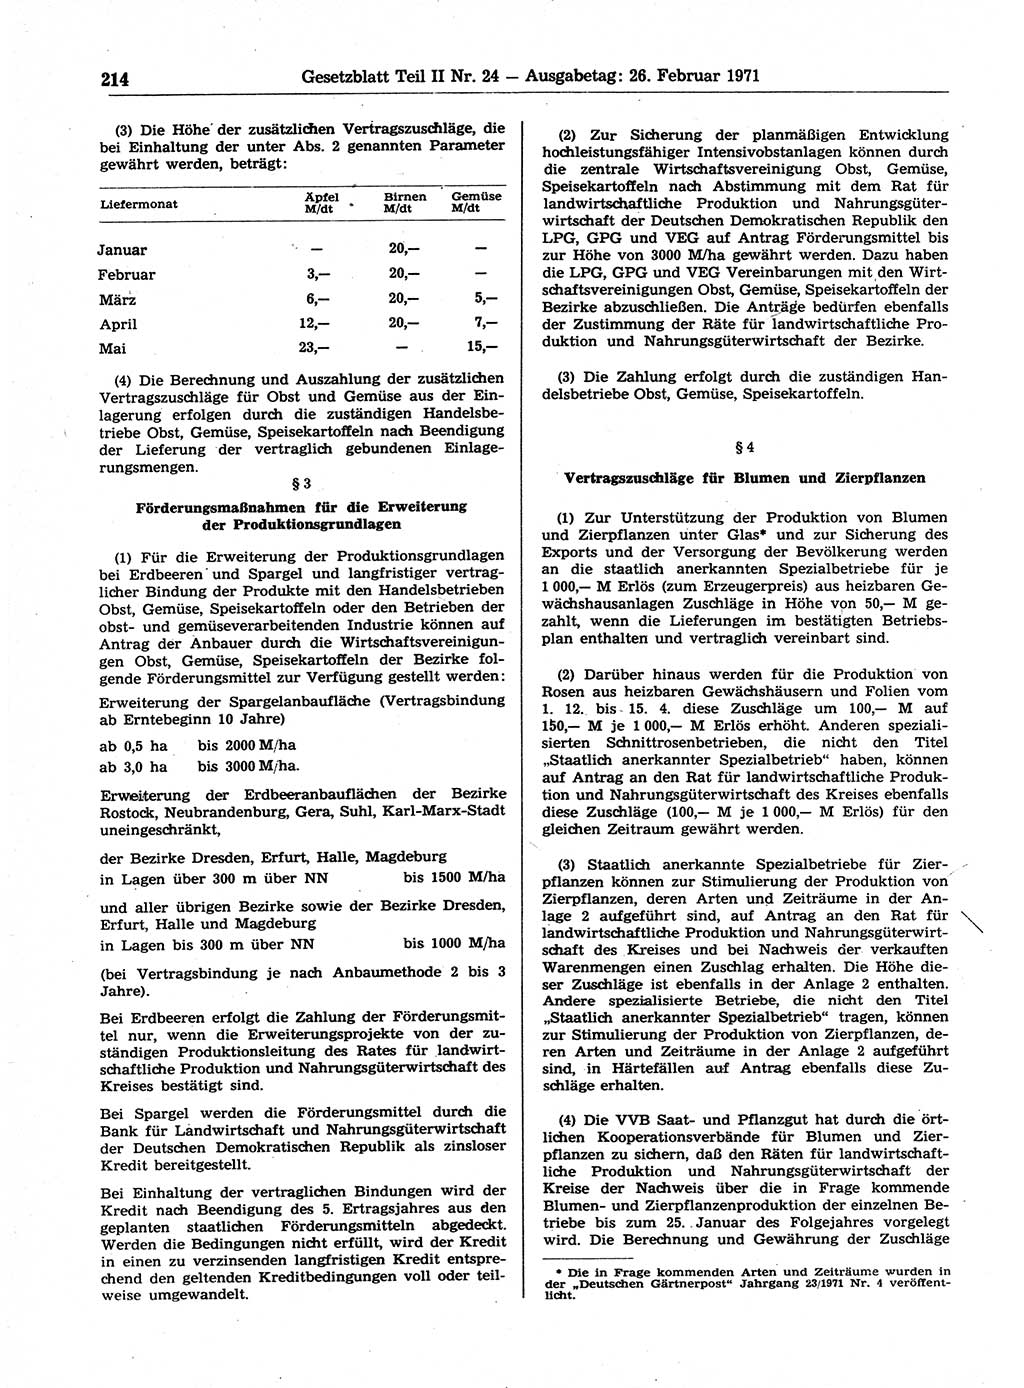 Gesetzblatt (GBl.) der Deutschen Demokratischen Republik (DDR) Teil ⅠⅠ 1971, Seite 214 (GBl. DDR ⅠⅠ 1971, S. 214)